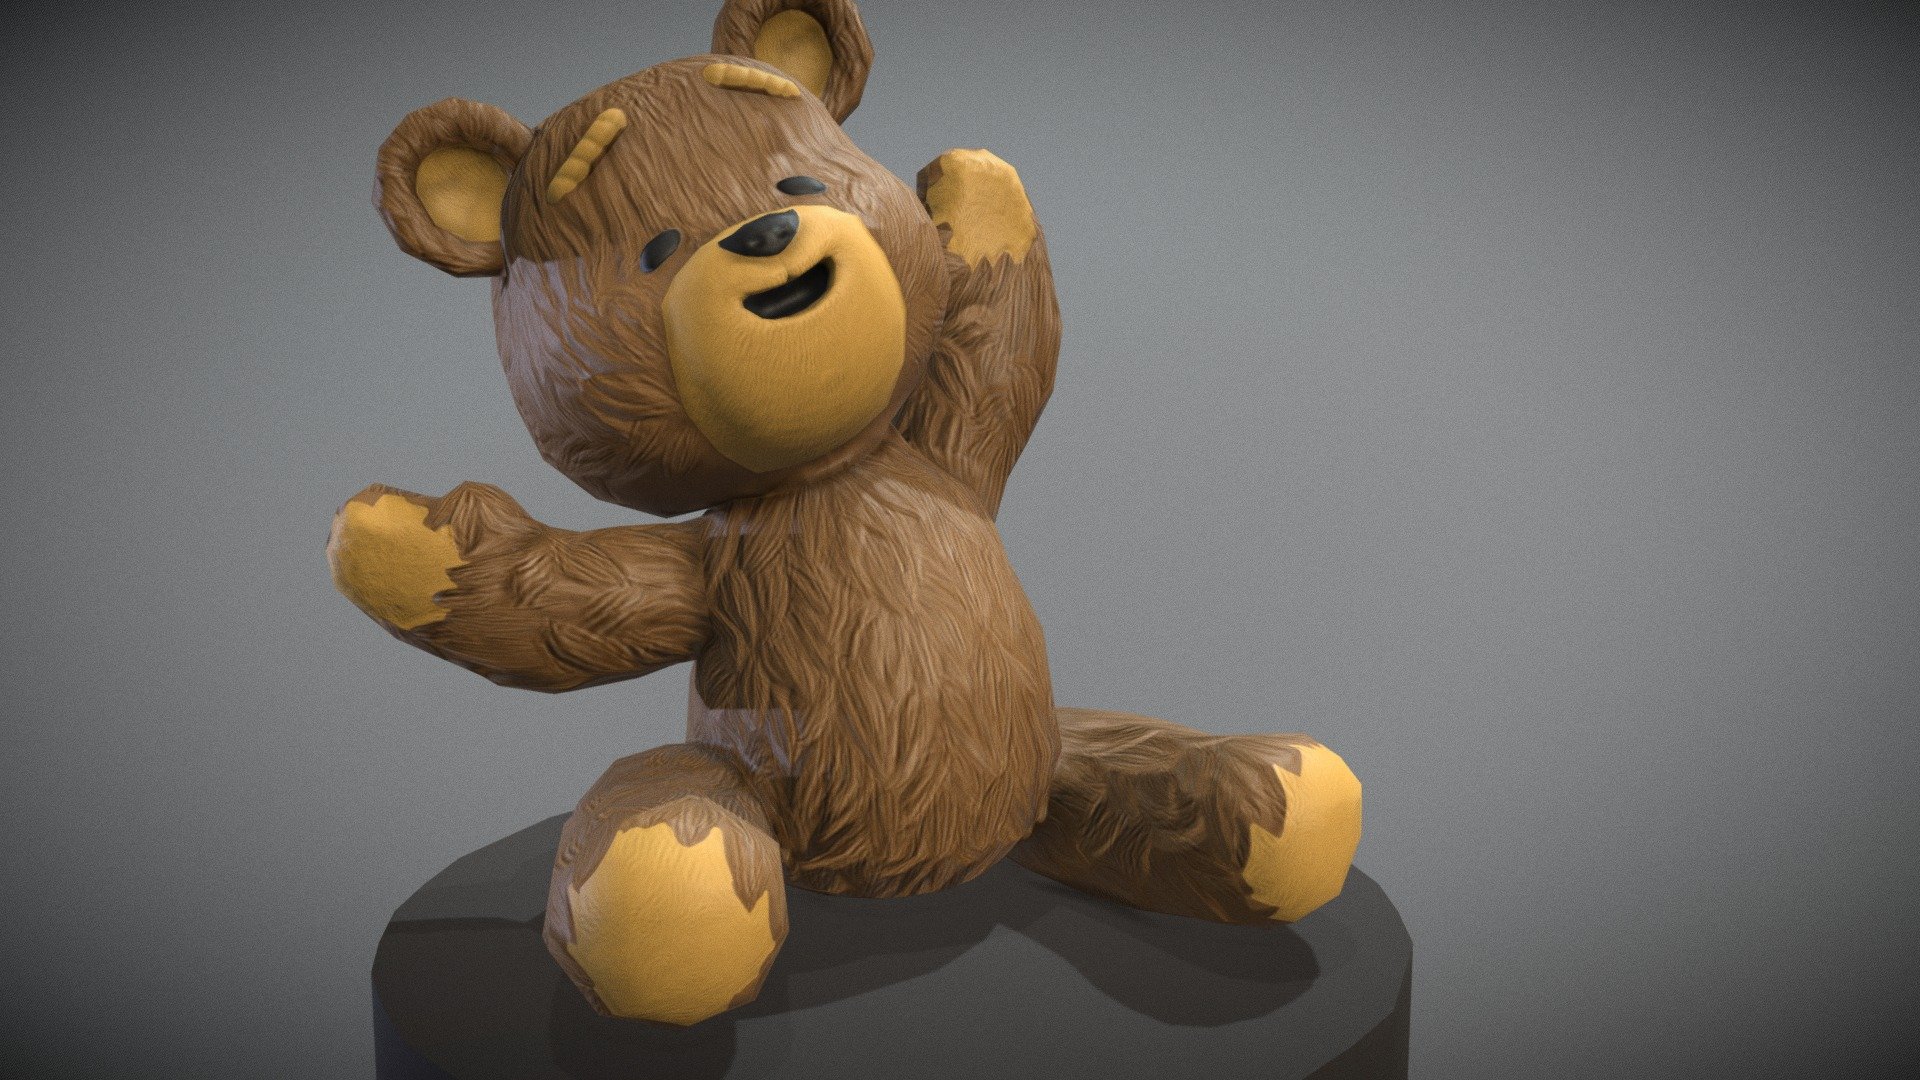 Teddy Bear Animated - 3D model by Logan McGuire (@LoganMac) [6cecb14]